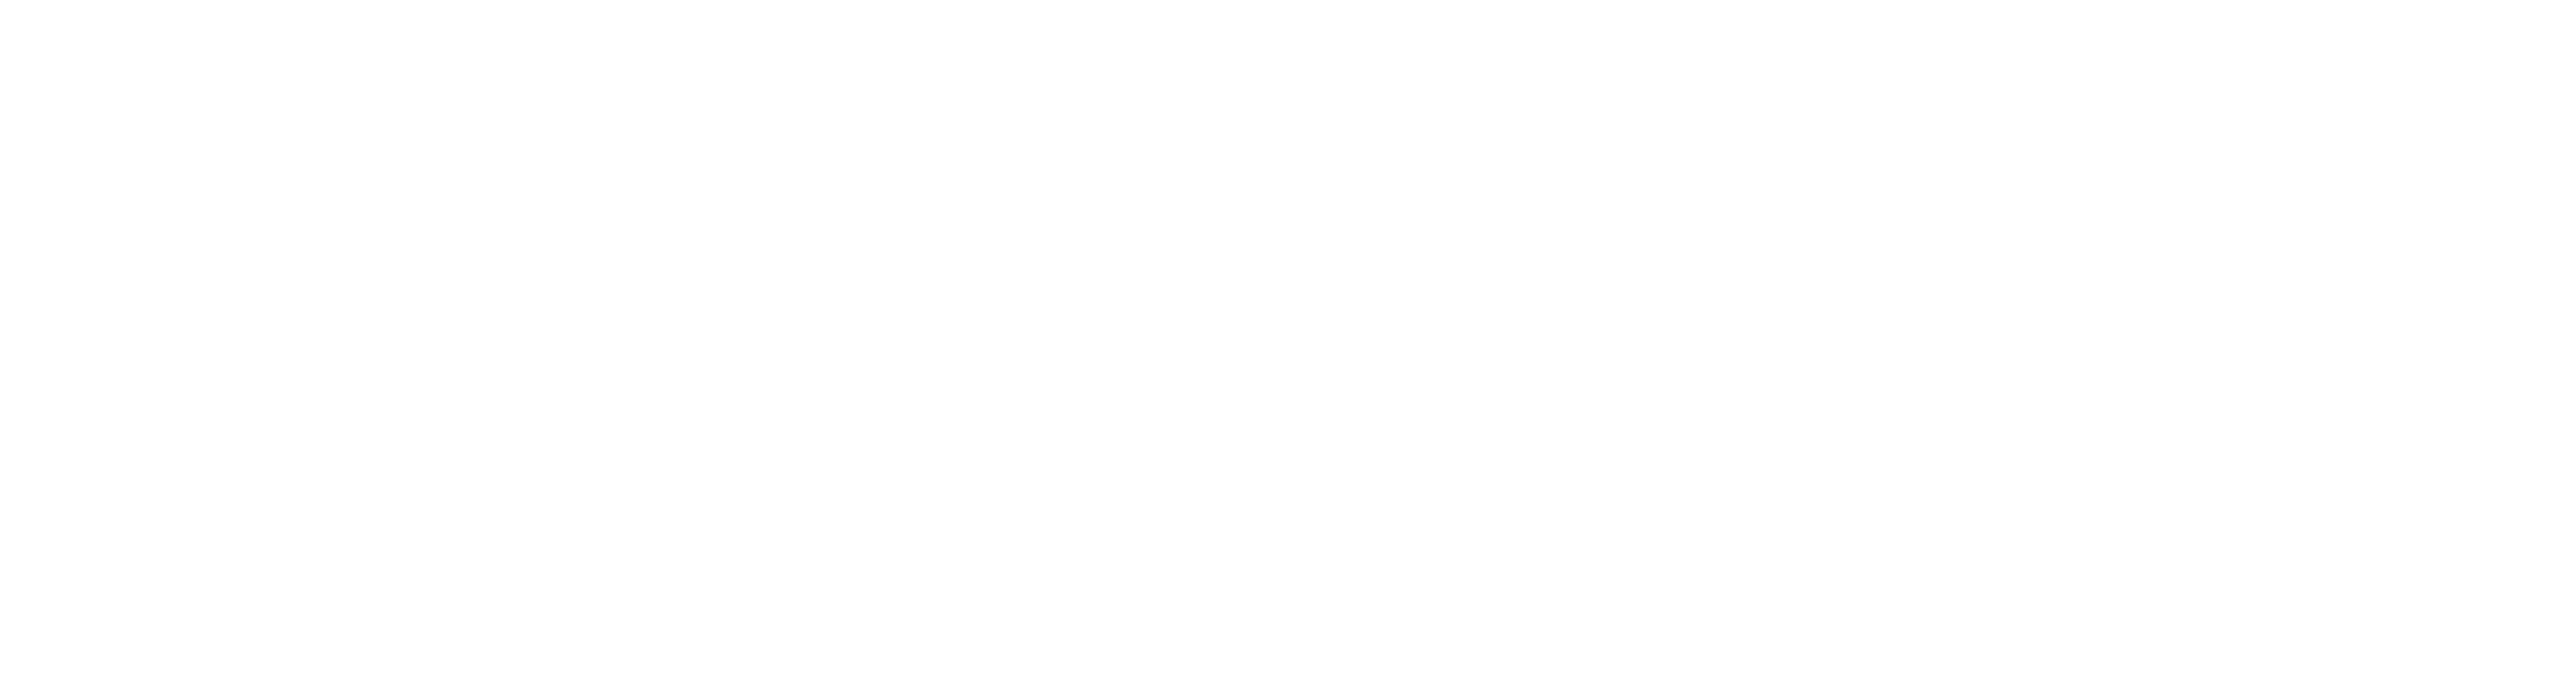 App-India